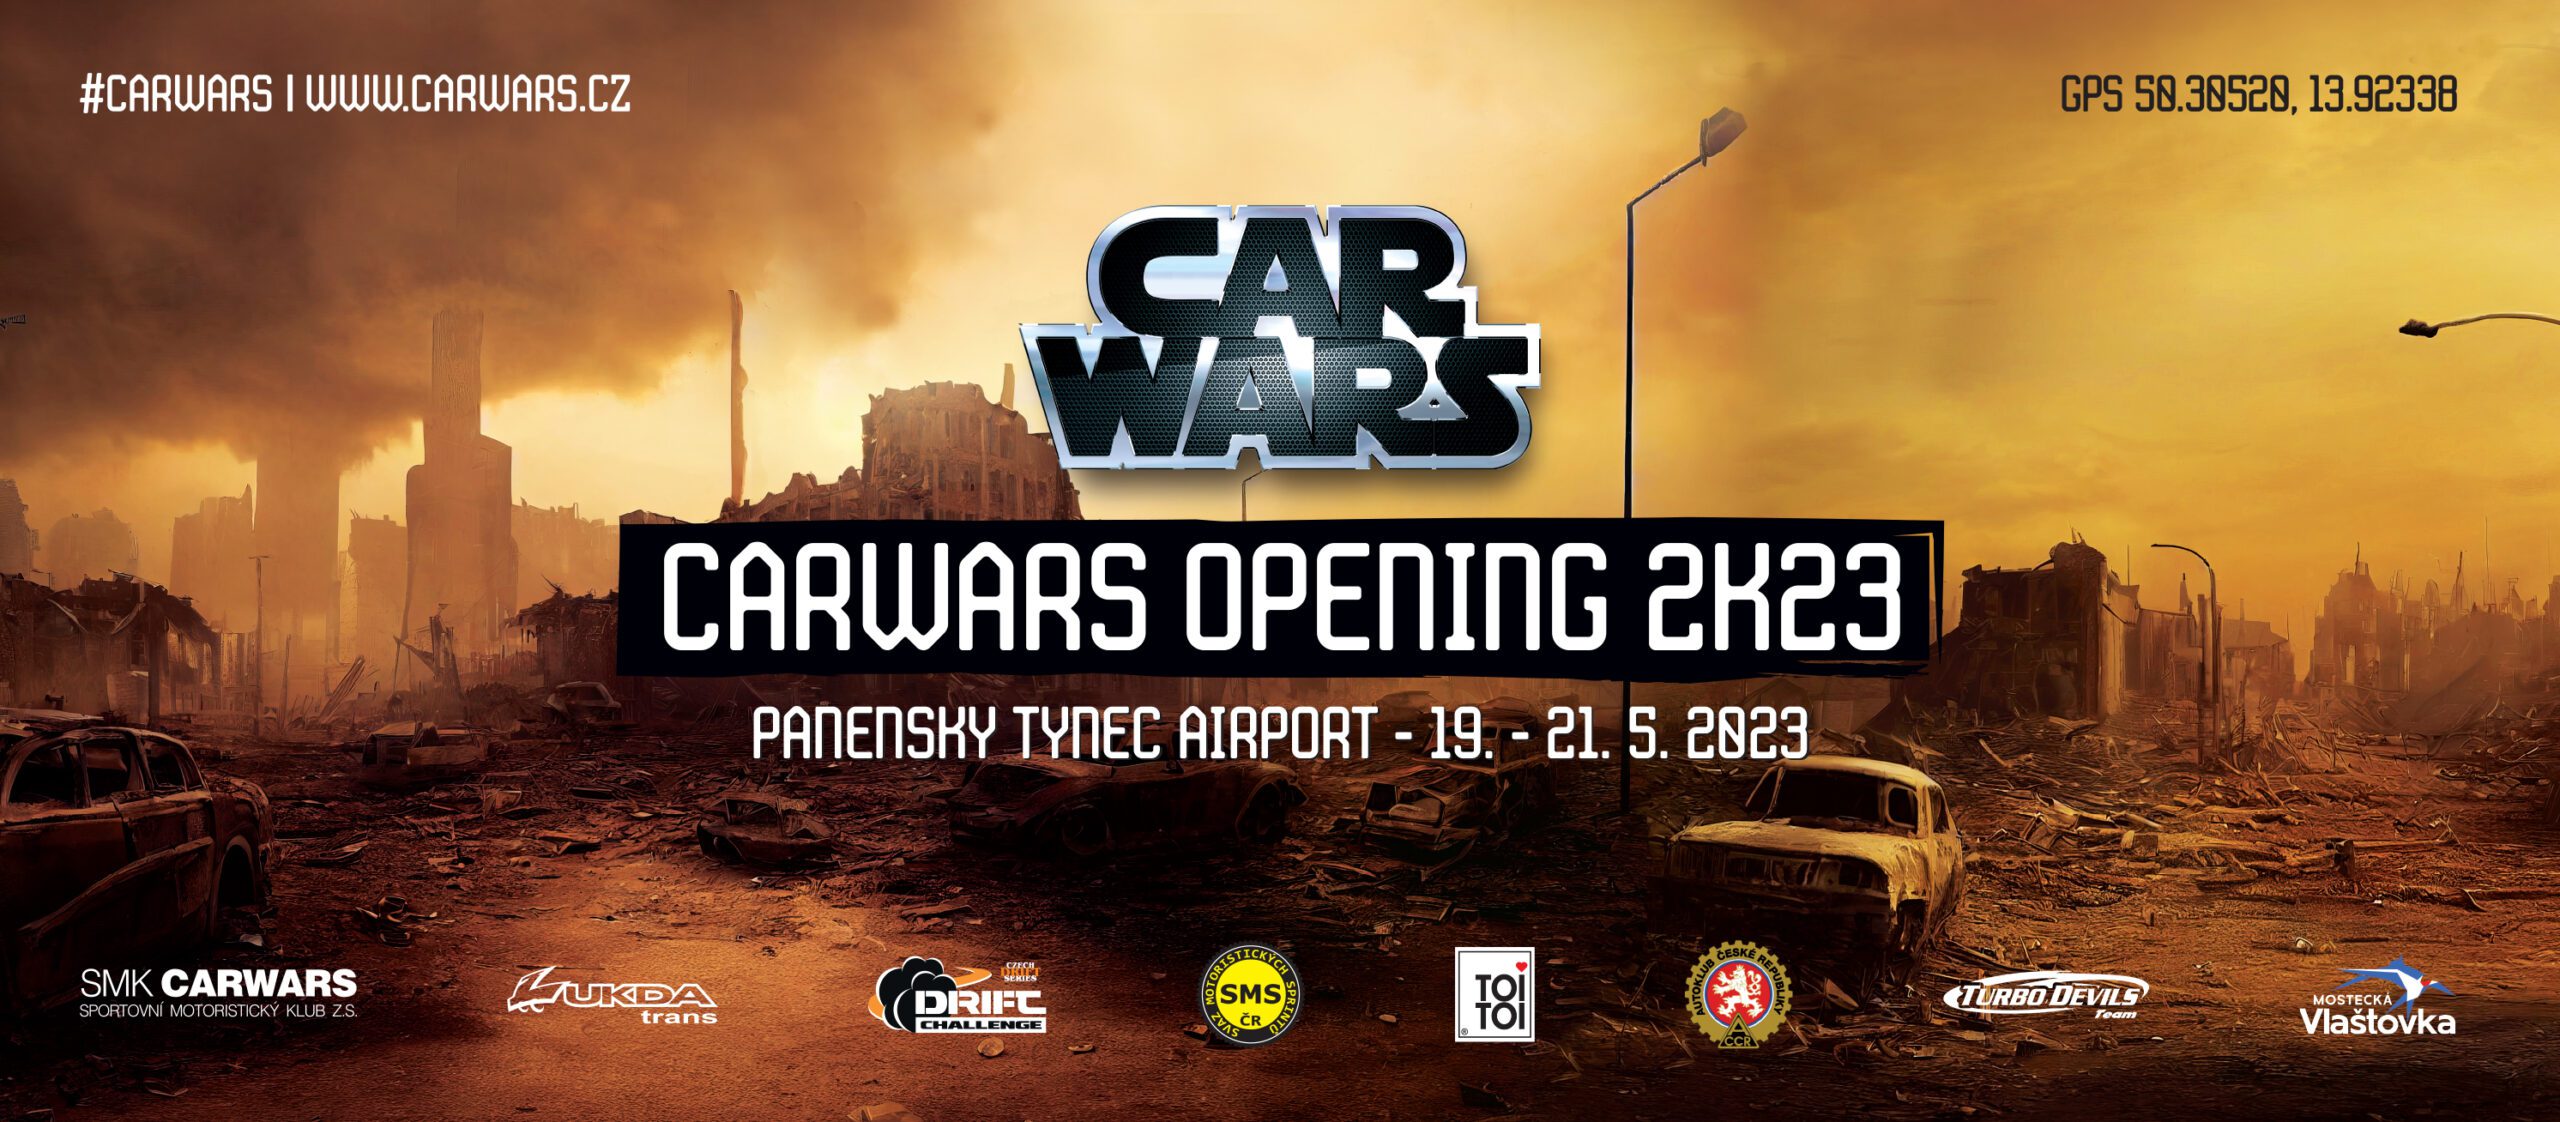 CARWARS Opening 2K23